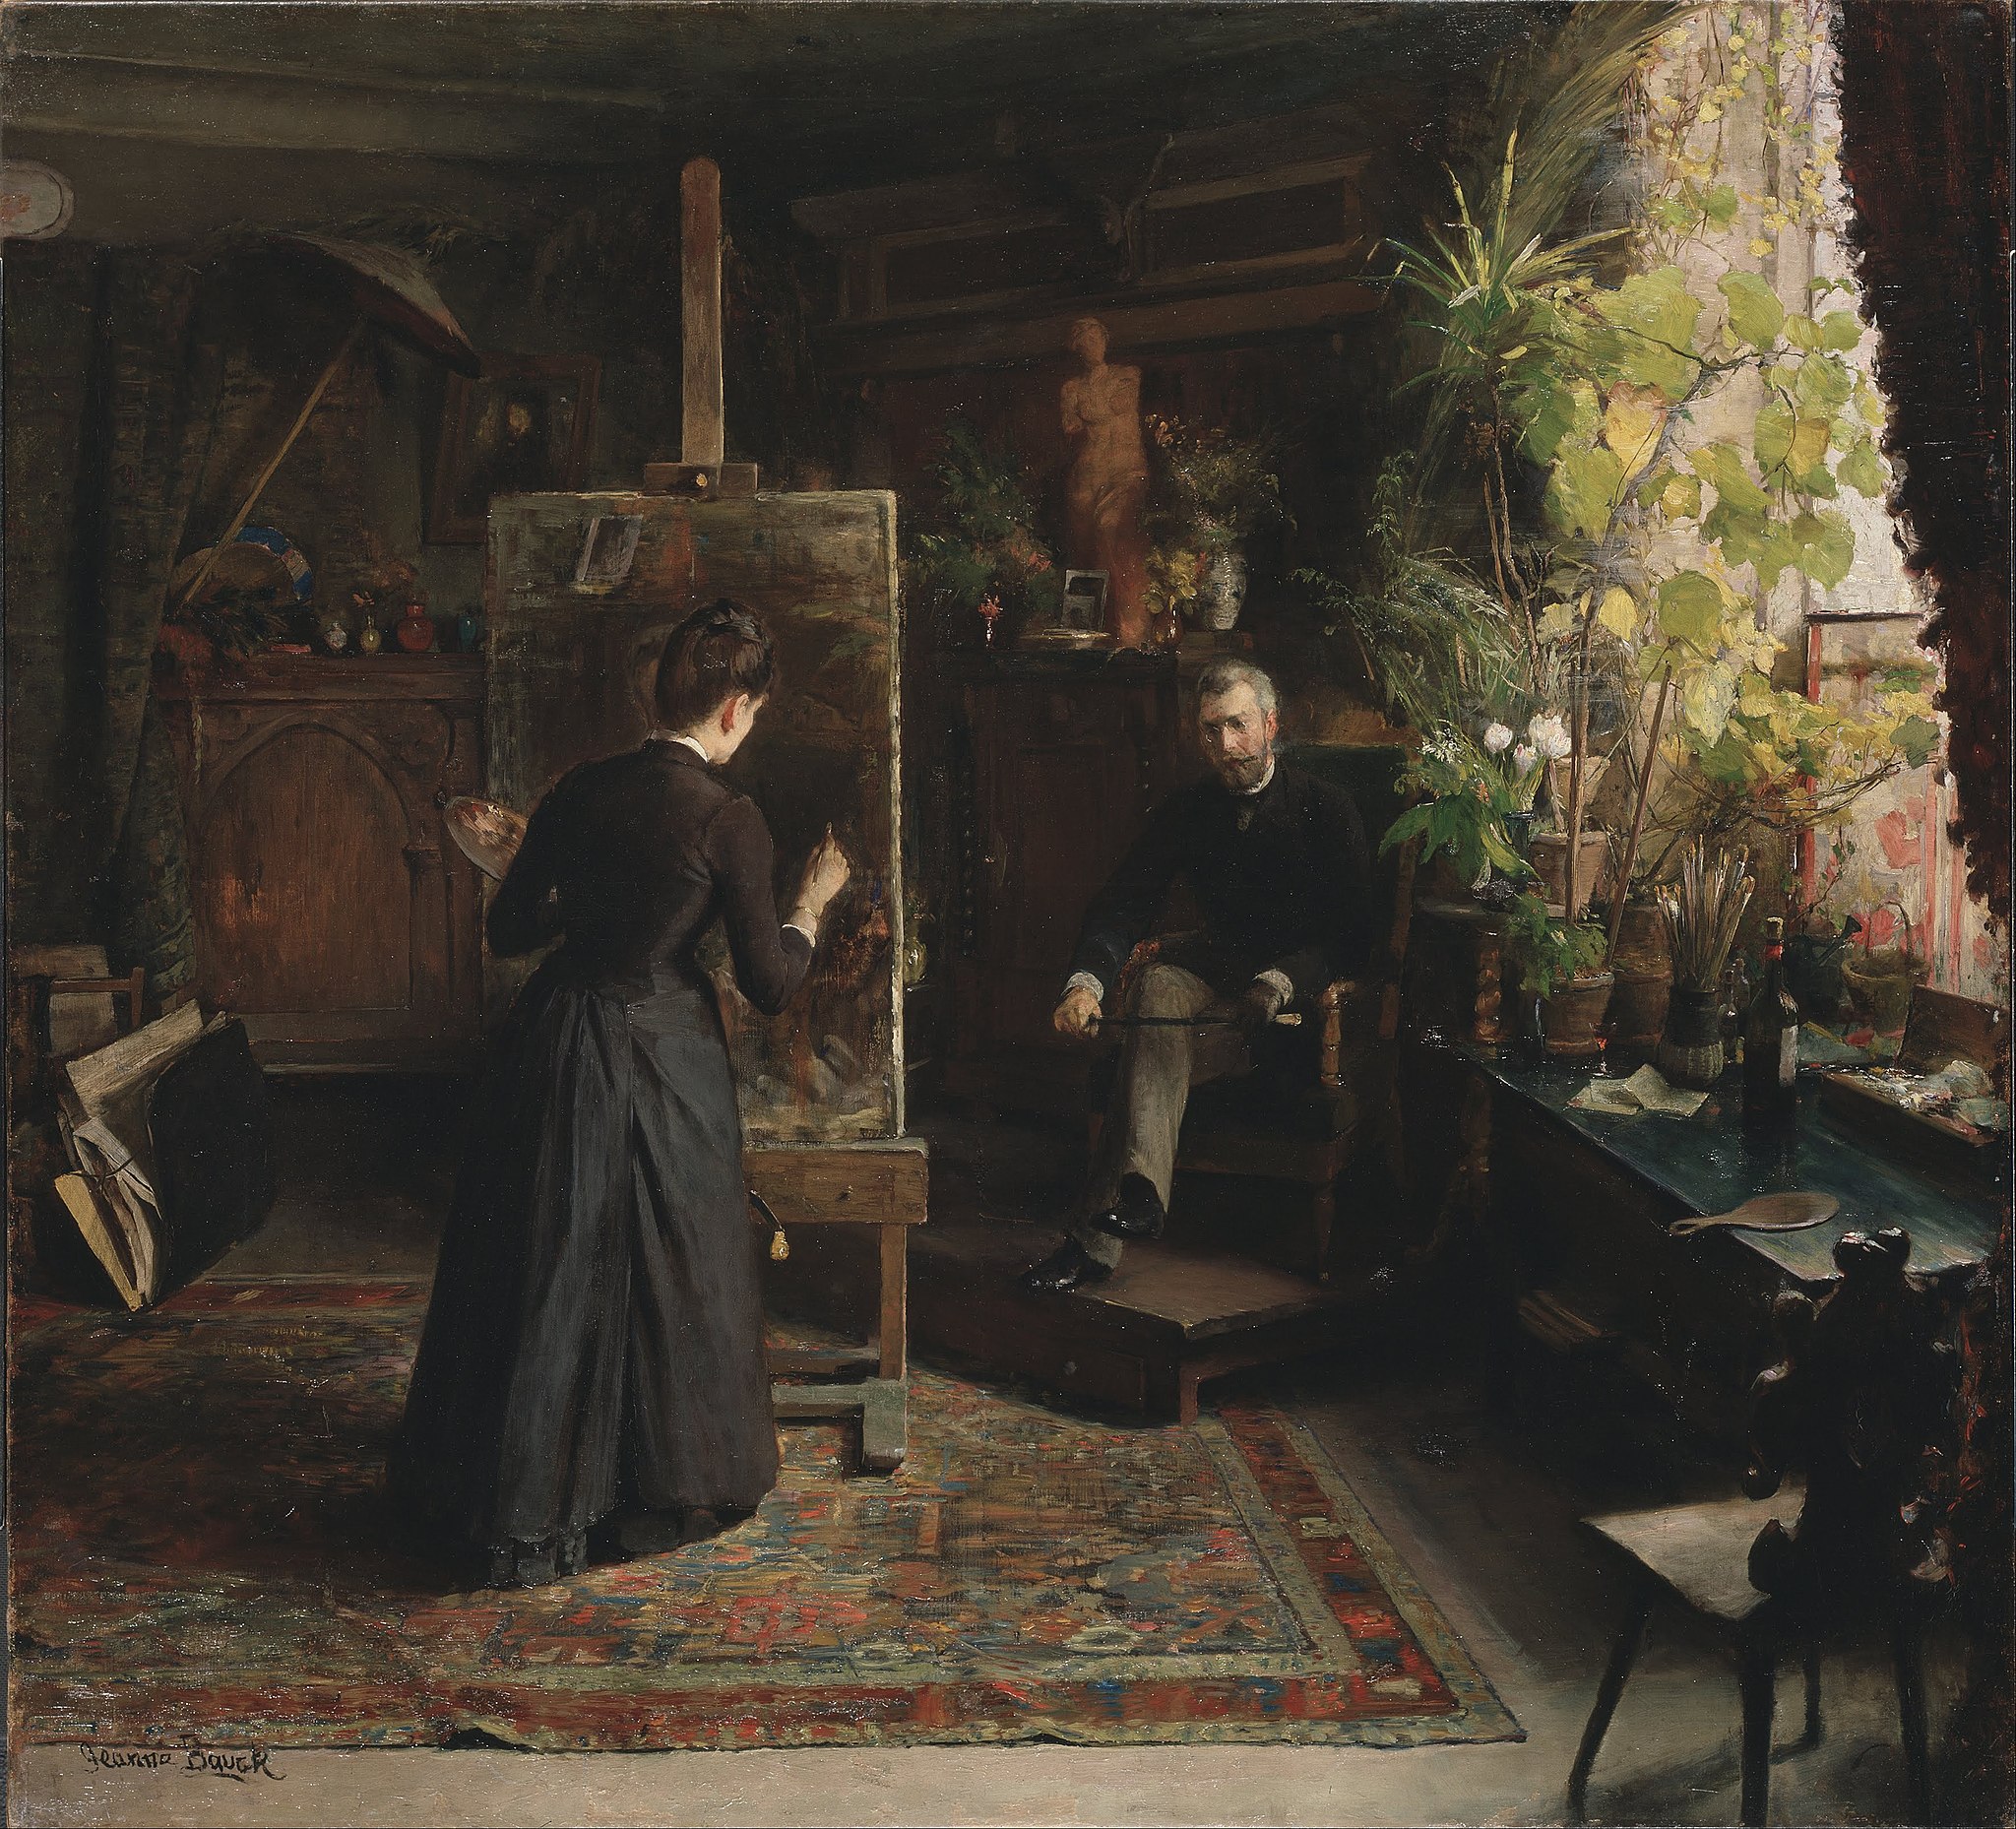 丹麦画家 贝莎 威格曼正在画肖像画 by 珍娜 鲍克 - 1870-80 